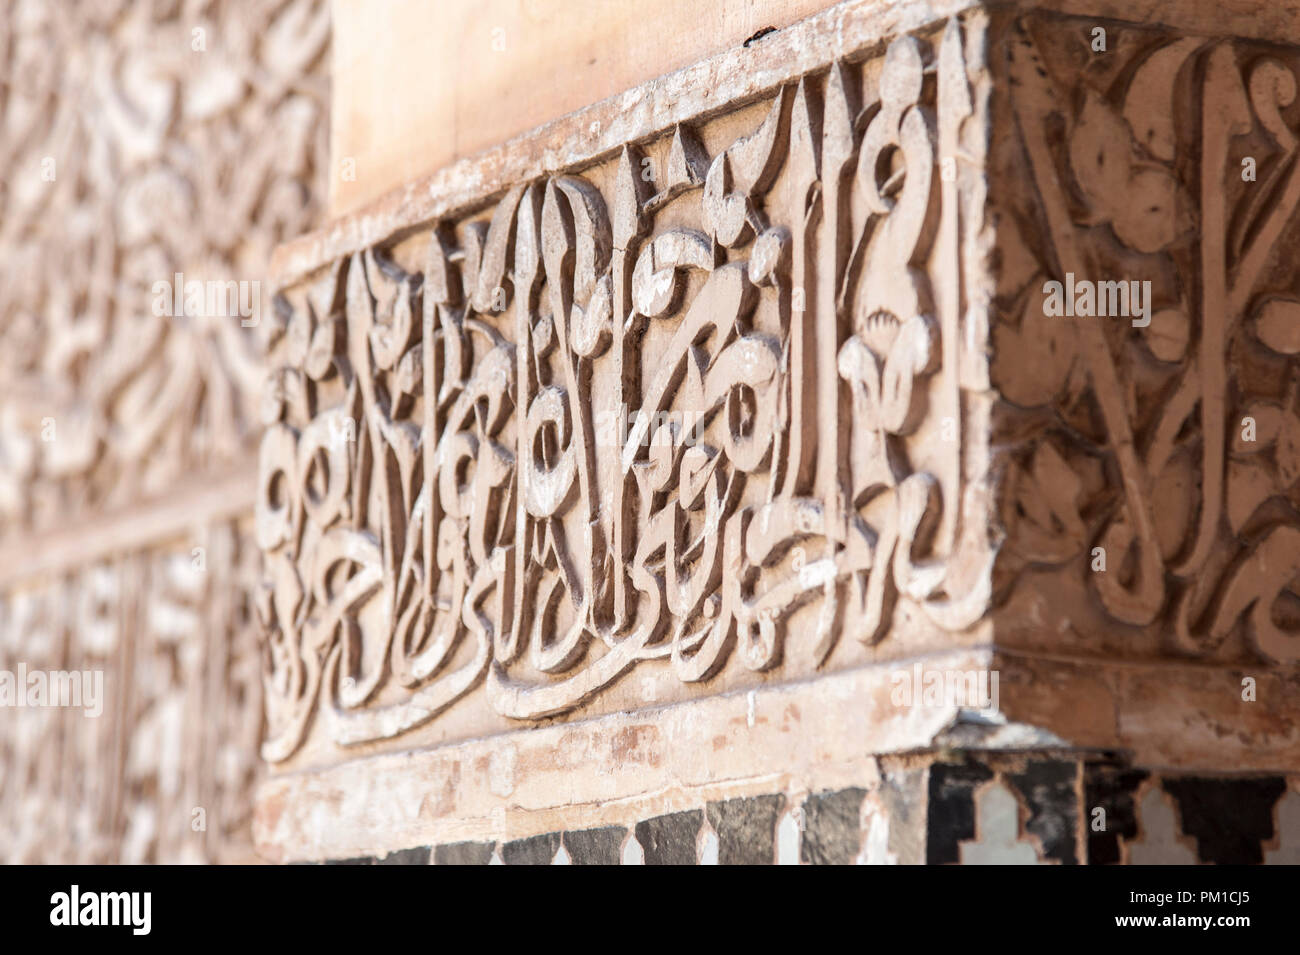 26-02-15, Marrakesch, Marokko. Architektonisches Detail an der Medersa Ben Youssef, oder der Sohn von Joseph an der Schule. Foto © Simon Grosset Stockfoto